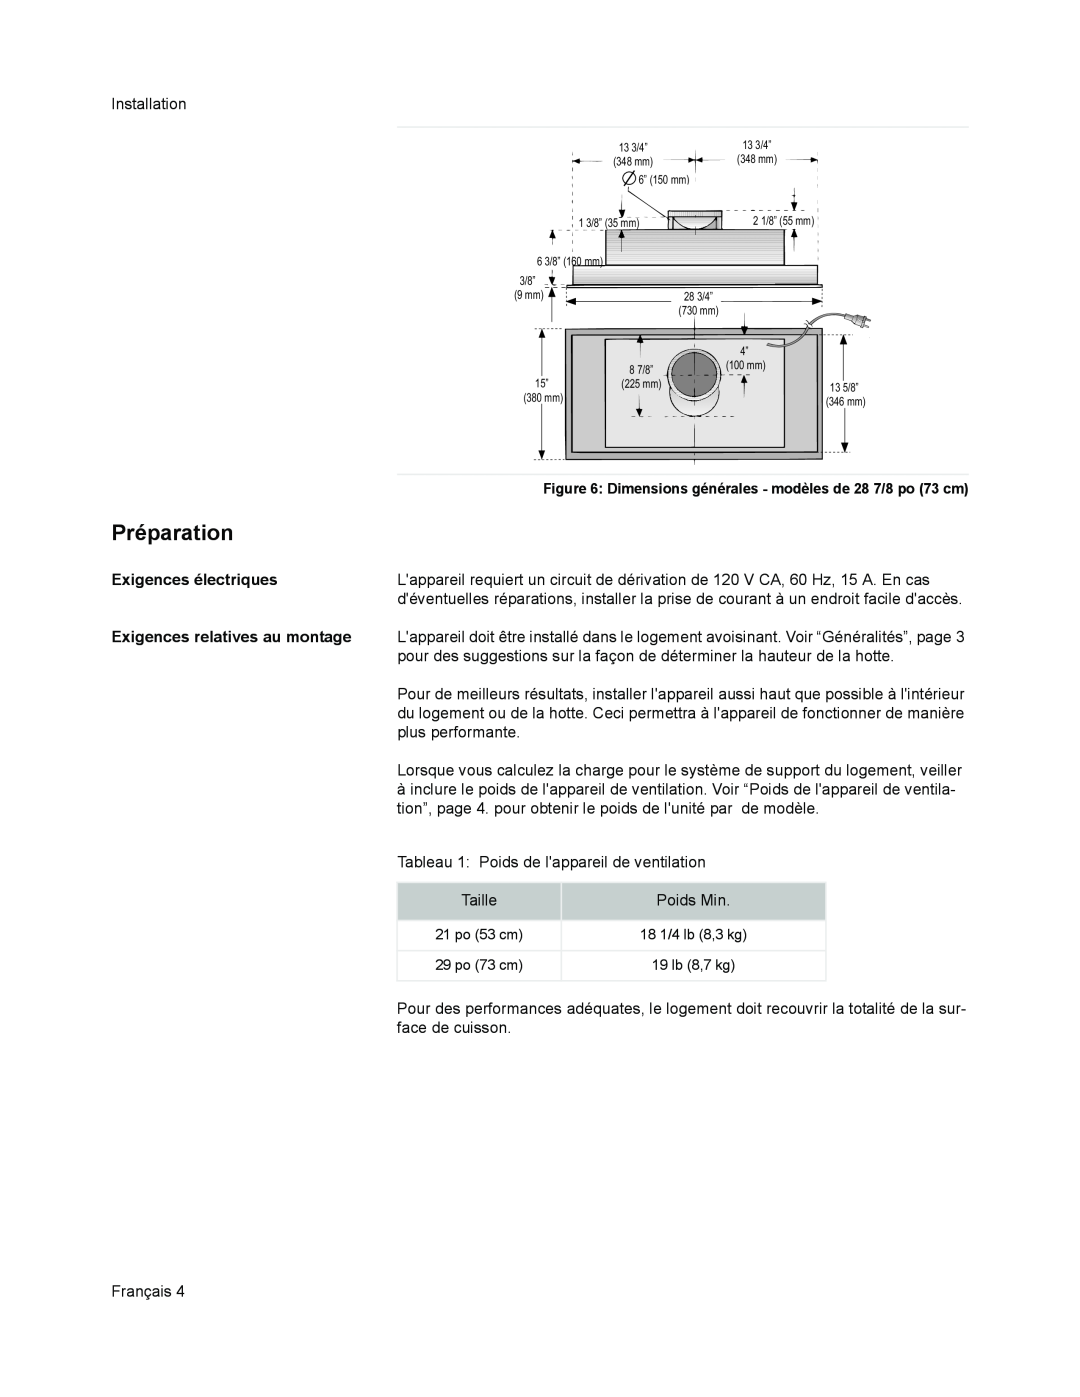 Thermador VCI2 installation manual Préparation, Exigences électriques, Exigences relatives au montage 